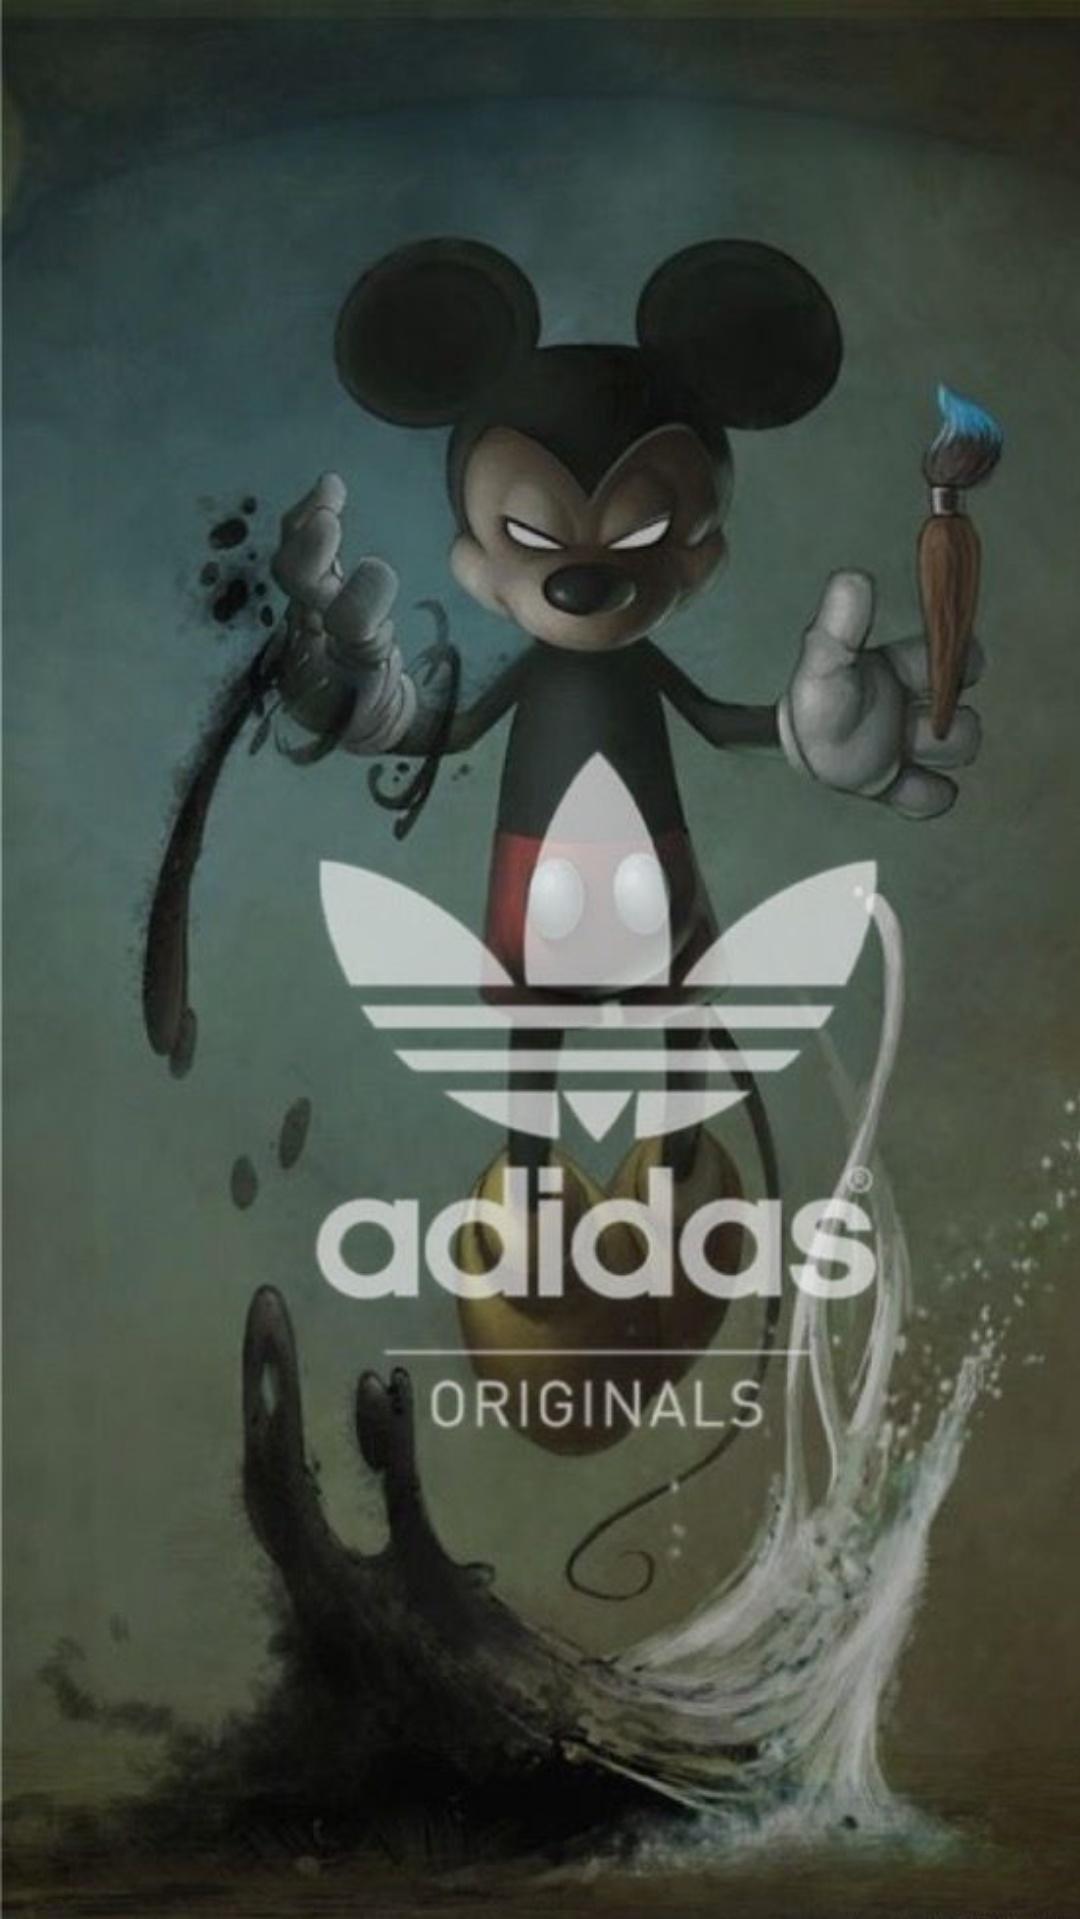 Cartoon Adidas Wallpaper Top Best